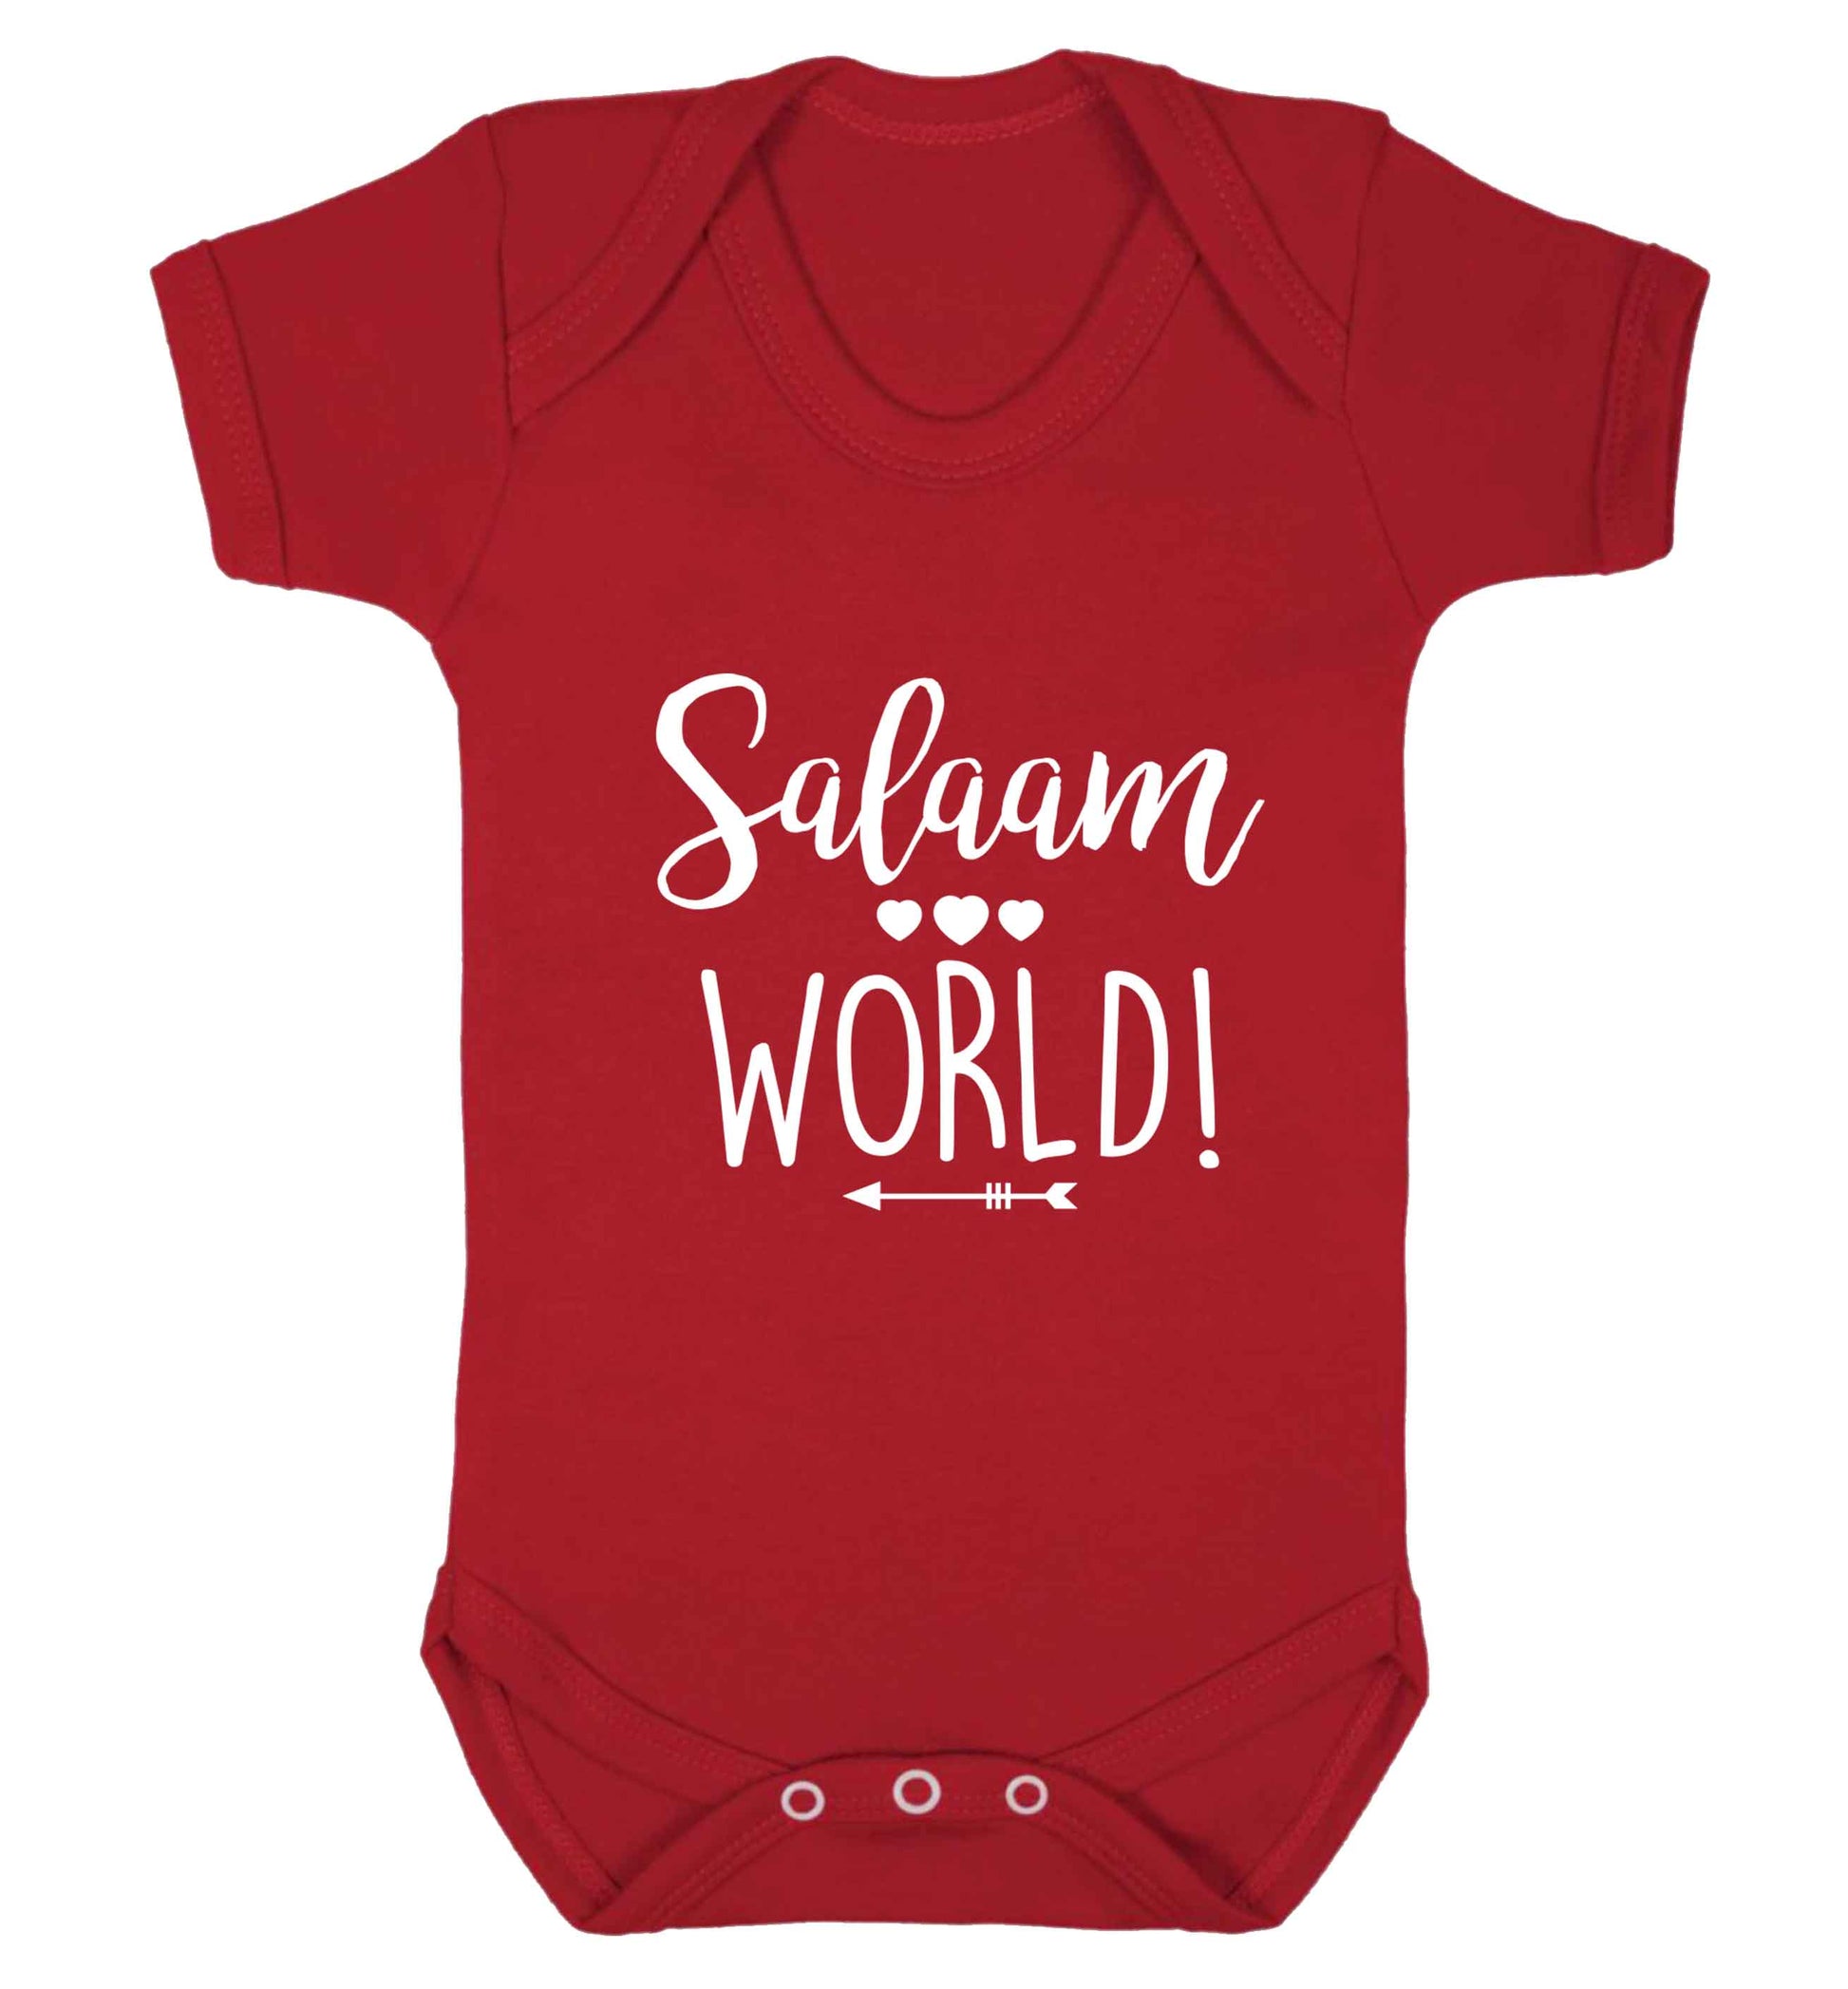 Salaam world baby vest red 18-24 months